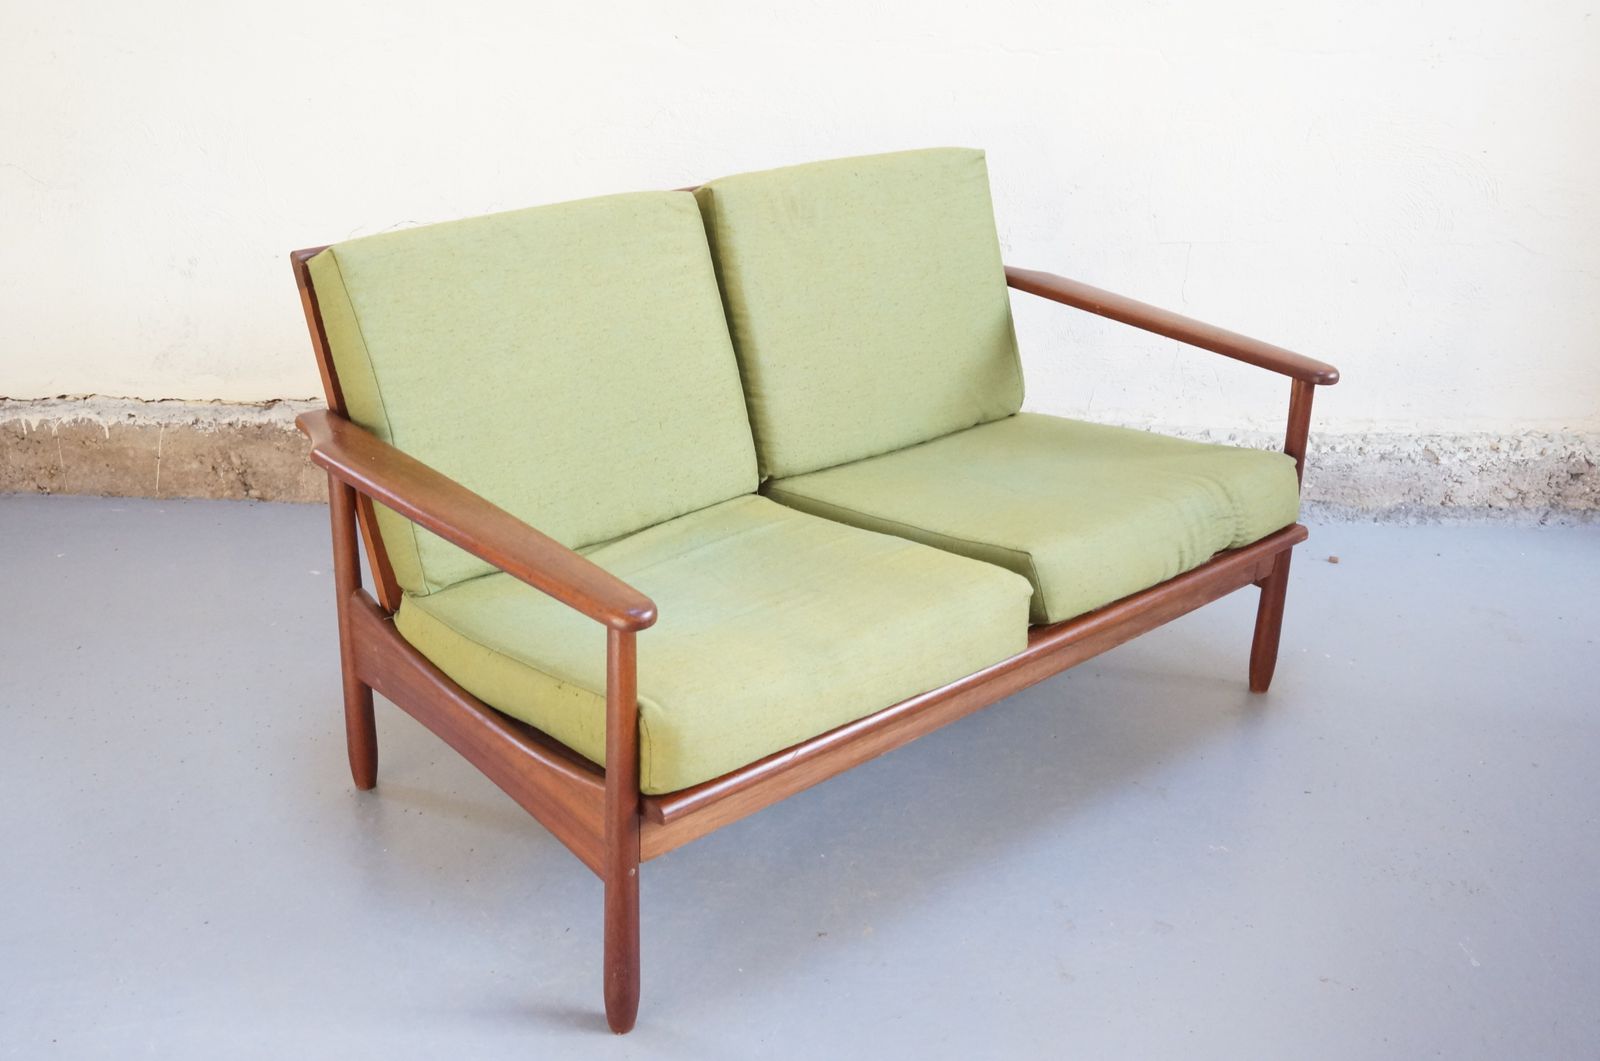 Vendu - banquette scandinave des années 1960 et teck massif danois année 50  design vintage fauteuil canape - Emiellabroc Vintage Retro Kitch